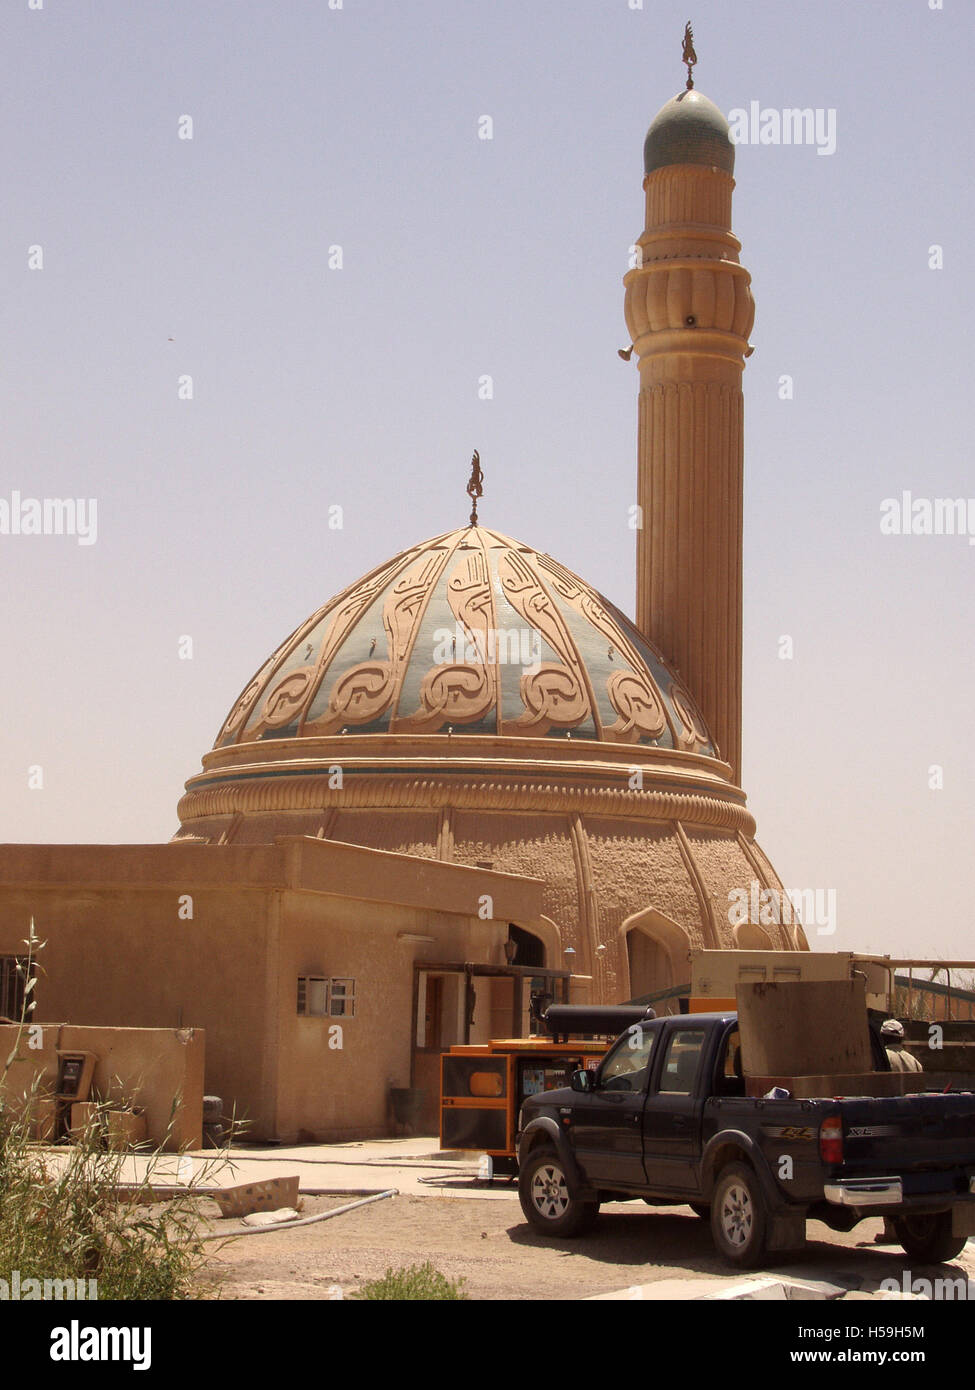 El 25 de julio de 2003 una pequeña mezquita dentro del perímetro del aeropuerto internacional de Bagdad, el antiguo aeropuerto internacional Saddam. Foto de stock